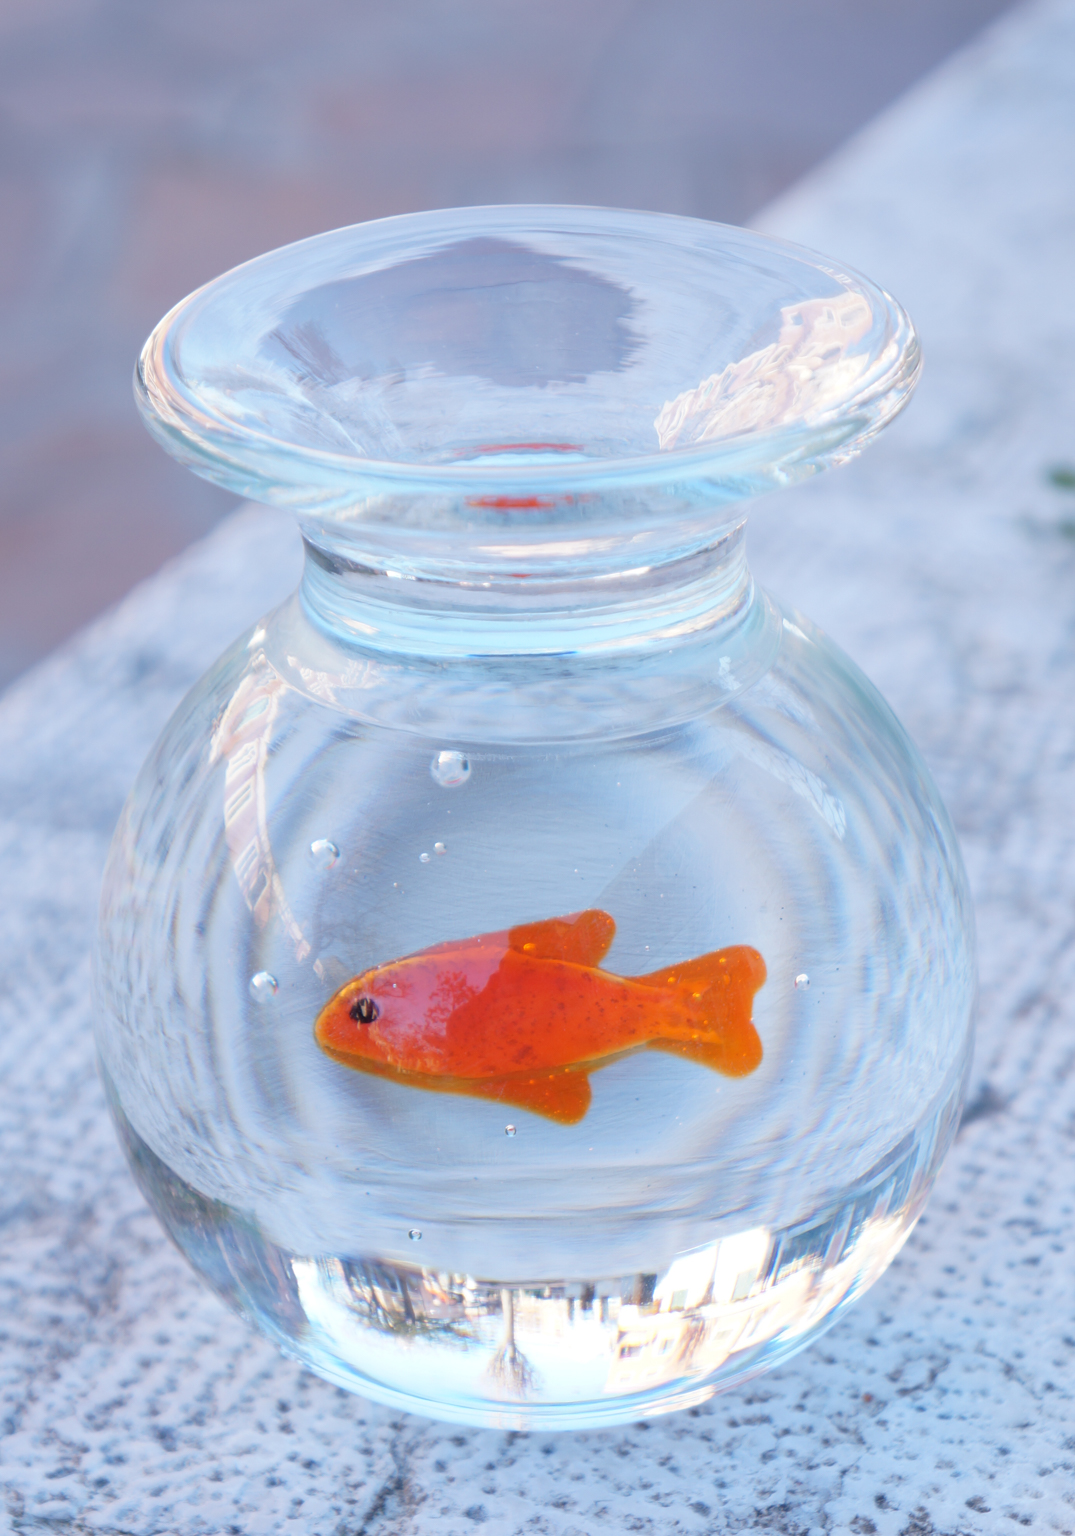 Bowl - Aquarium Red Fish Murano Glass - Made Murano Glass